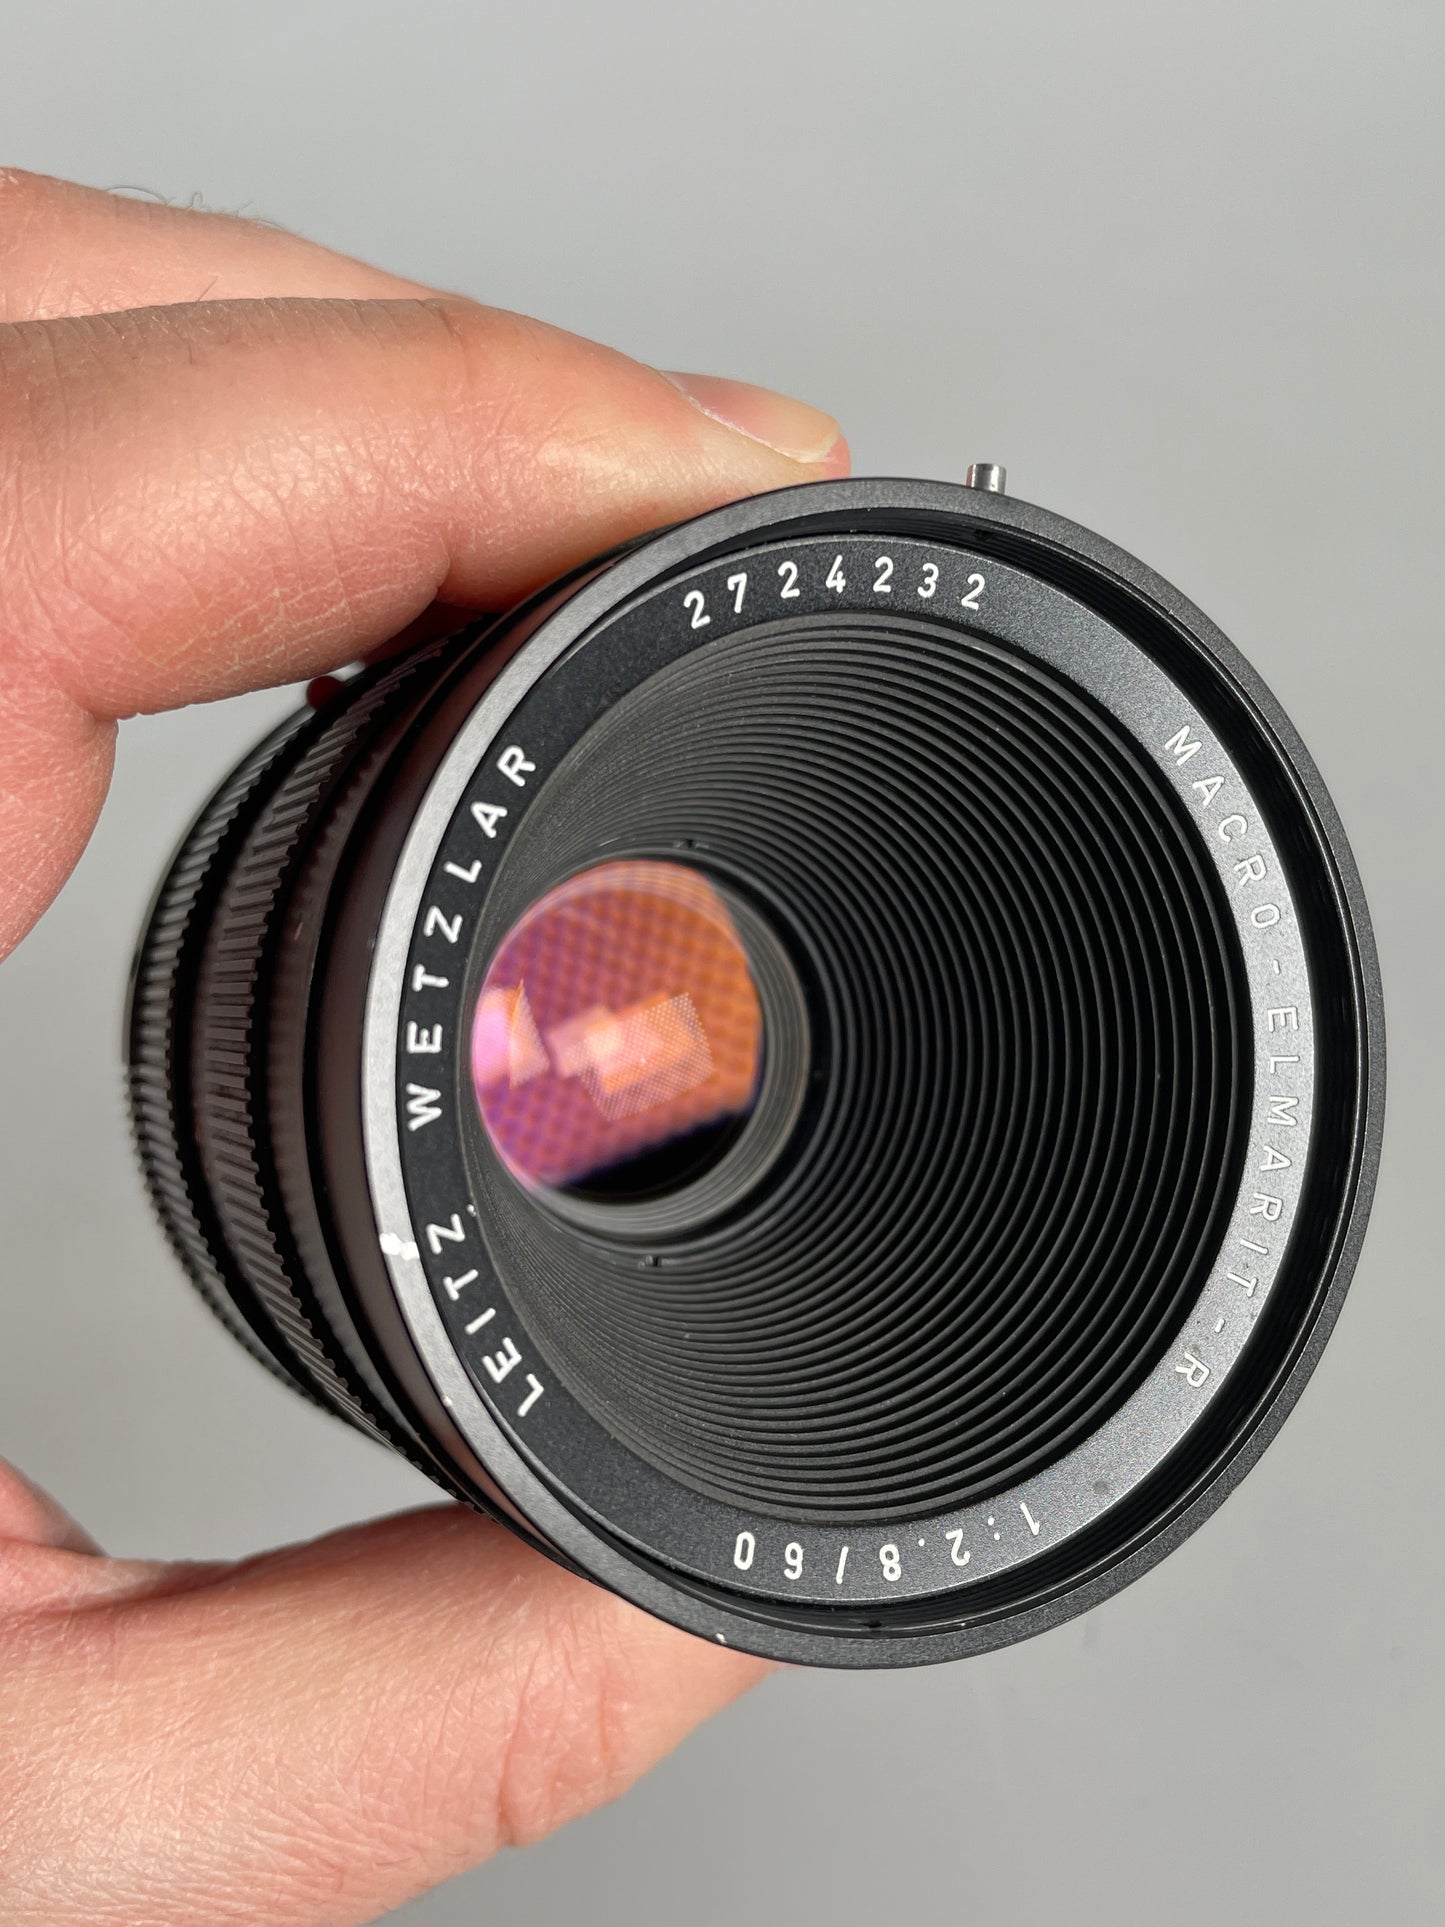 Leica Leitz Macro-Elmarit-R 60mm f2.8 2-cam lens